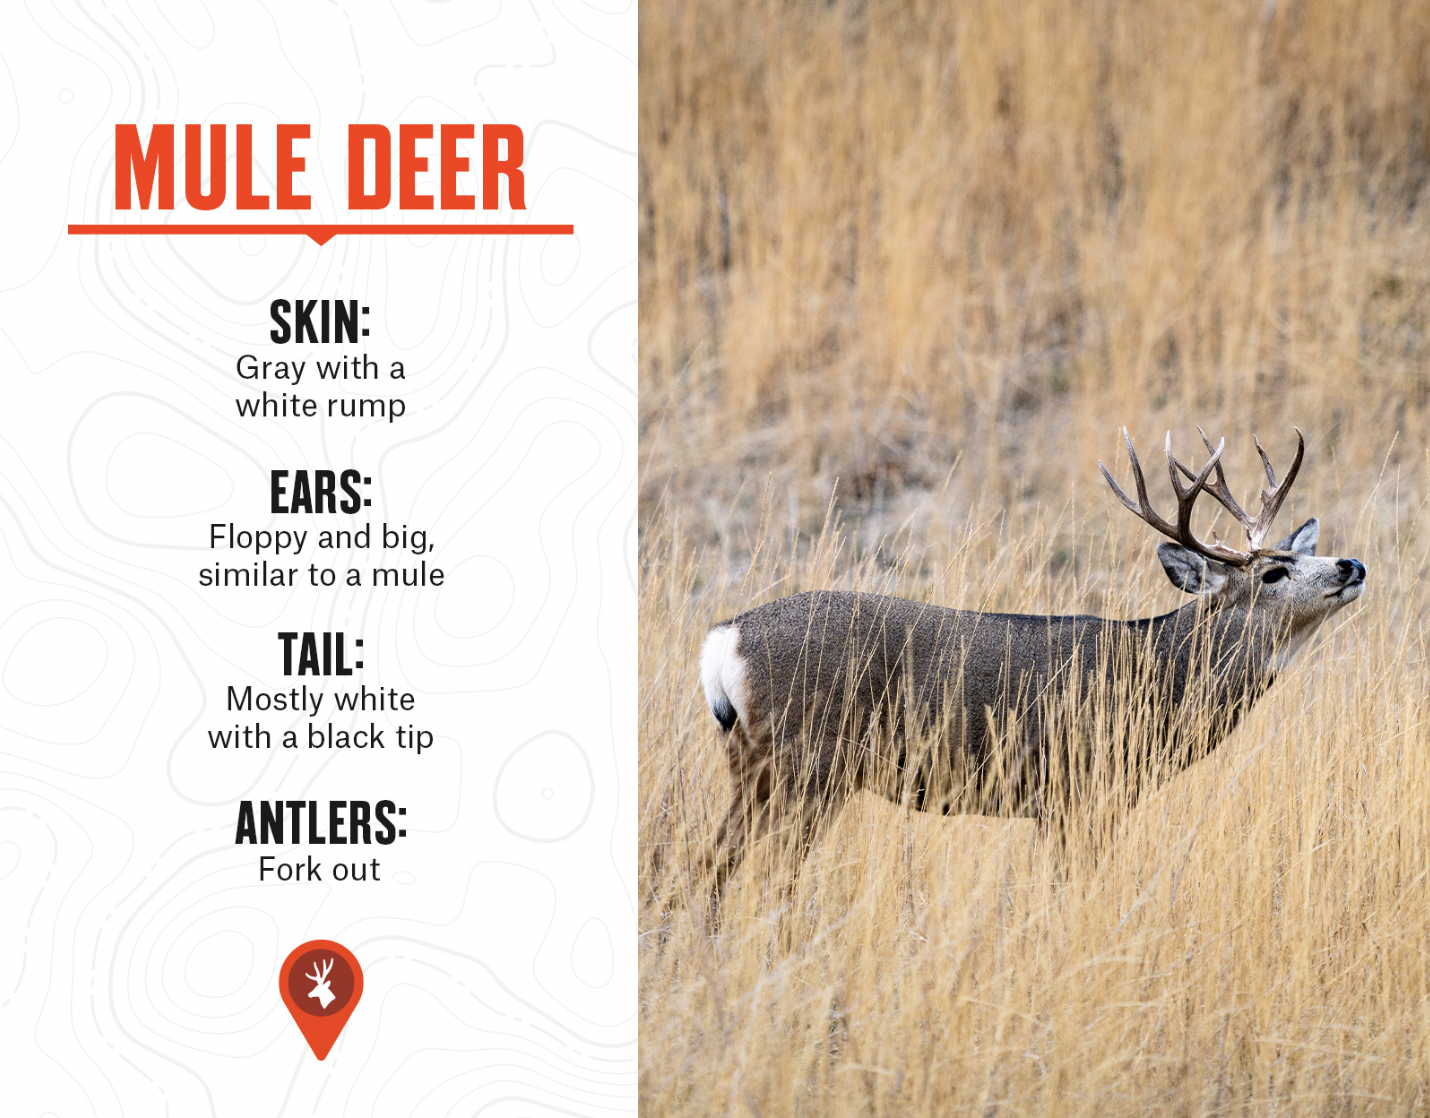 mule deer characteristics and what mule deer look like vs. white tail deer